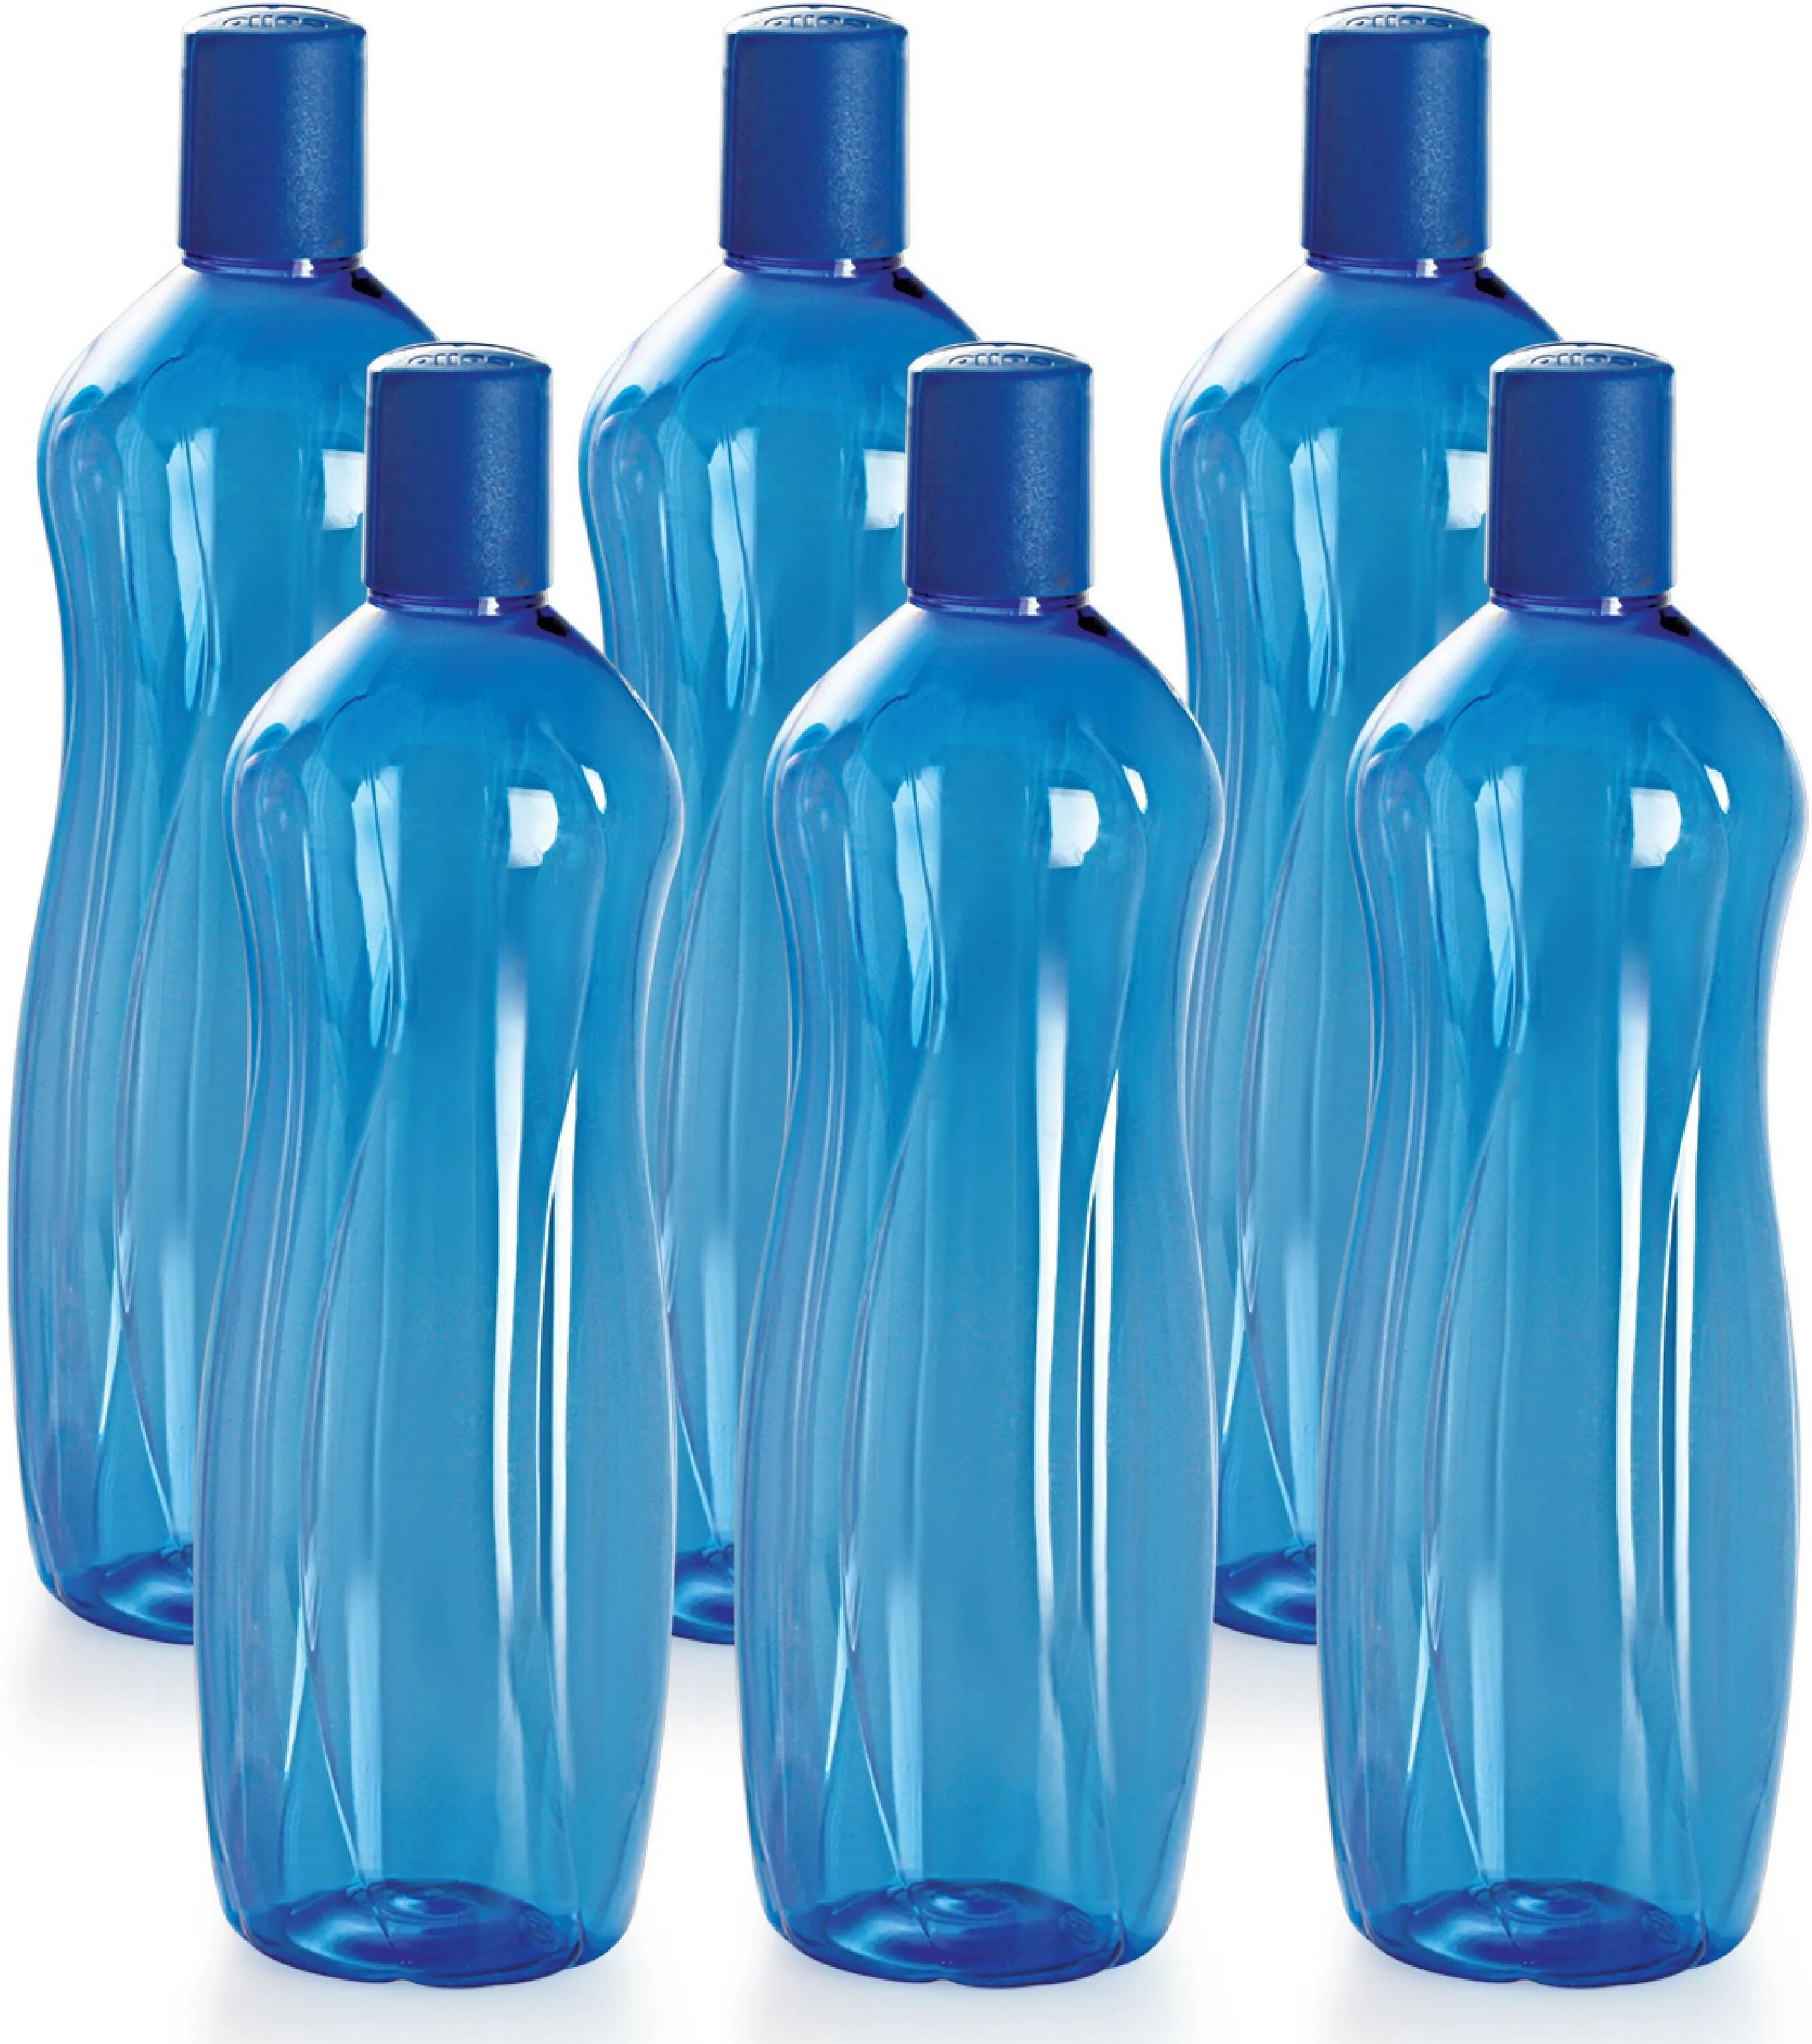 Бутылка для воды 1 литр. ПЭТ бутылки. Бутылка пластиковая голубая. Pet бутылки. Формы бутылок для воды.